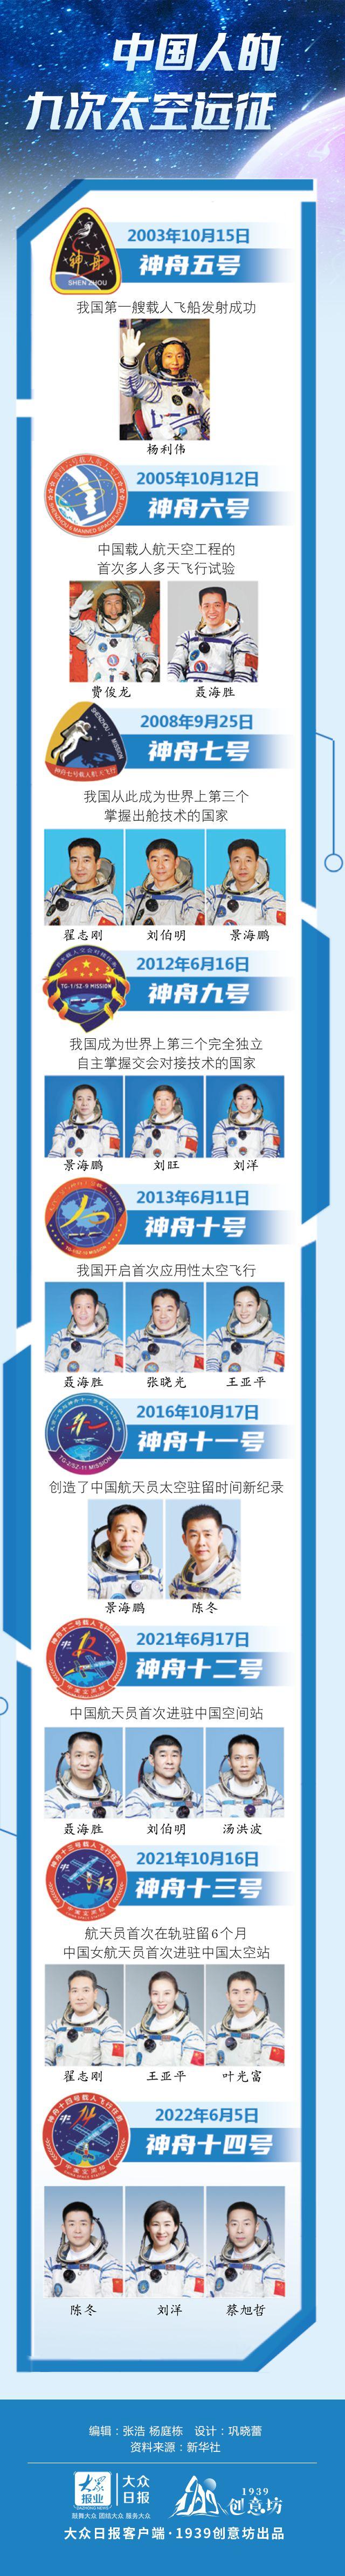 长图丨中国人的九次太空远征